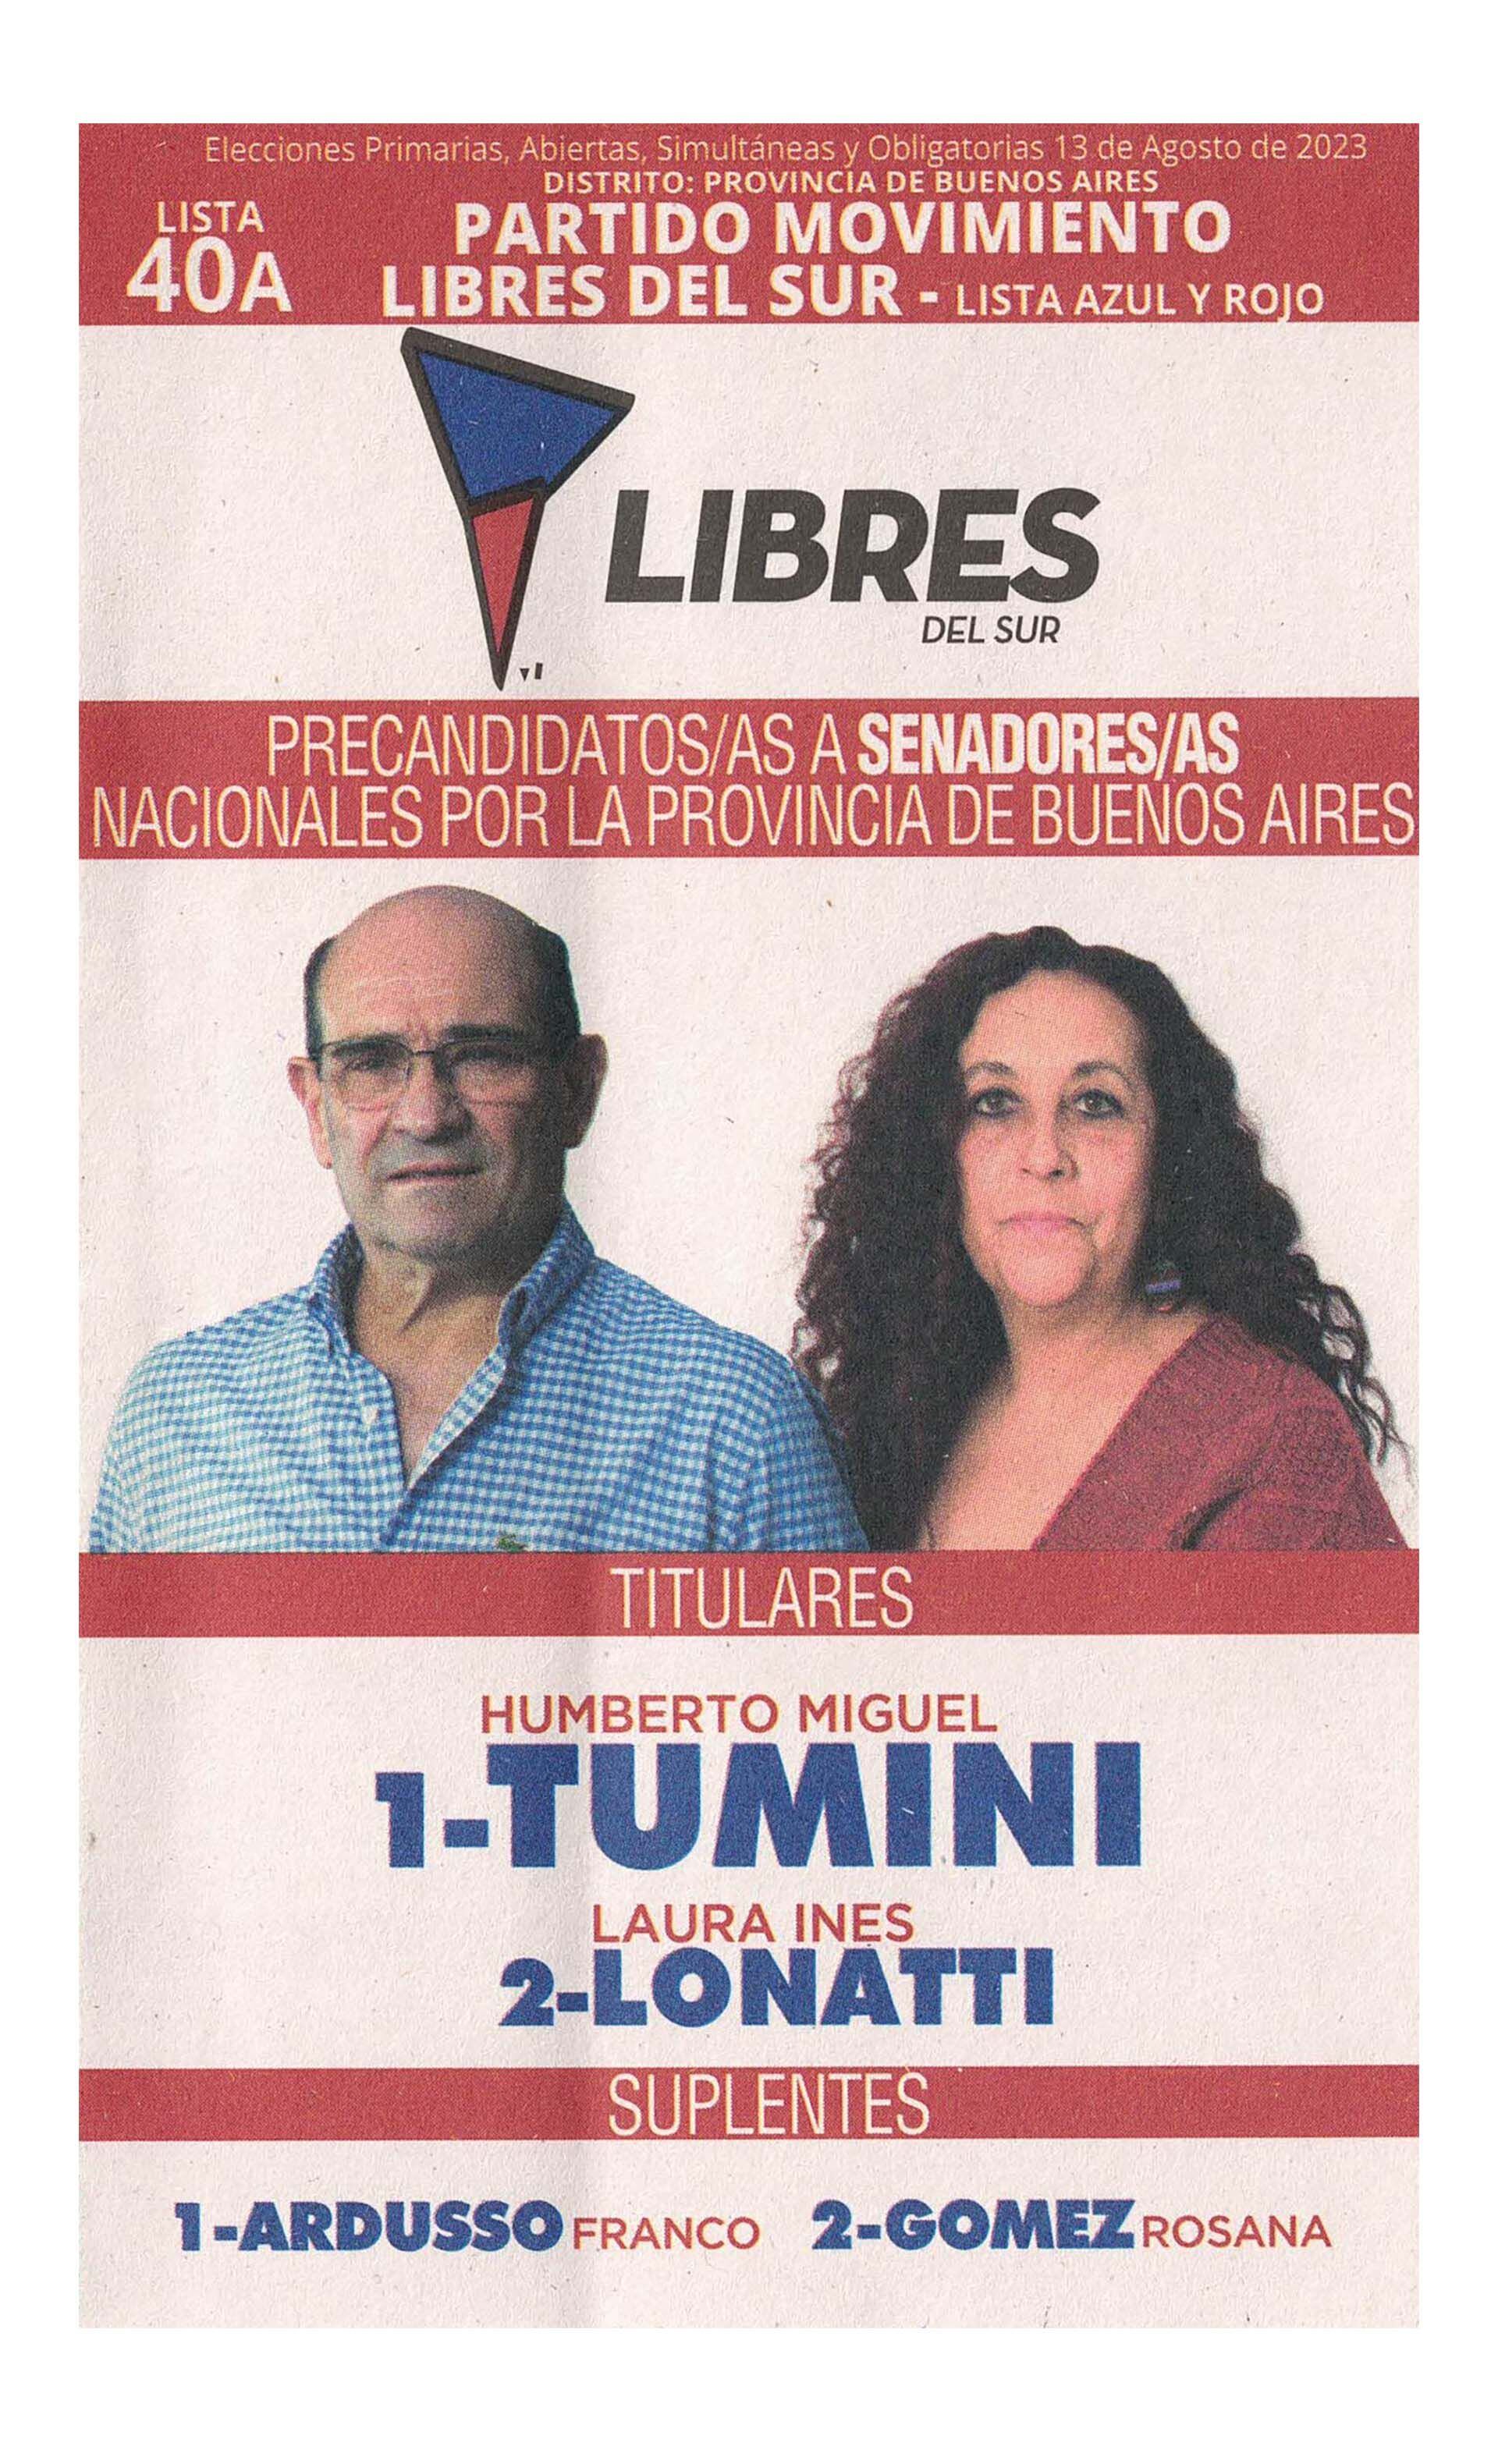 La boleta oficial de Libres del Sur de precandidatos a senadores nacionales de Buenos Aires